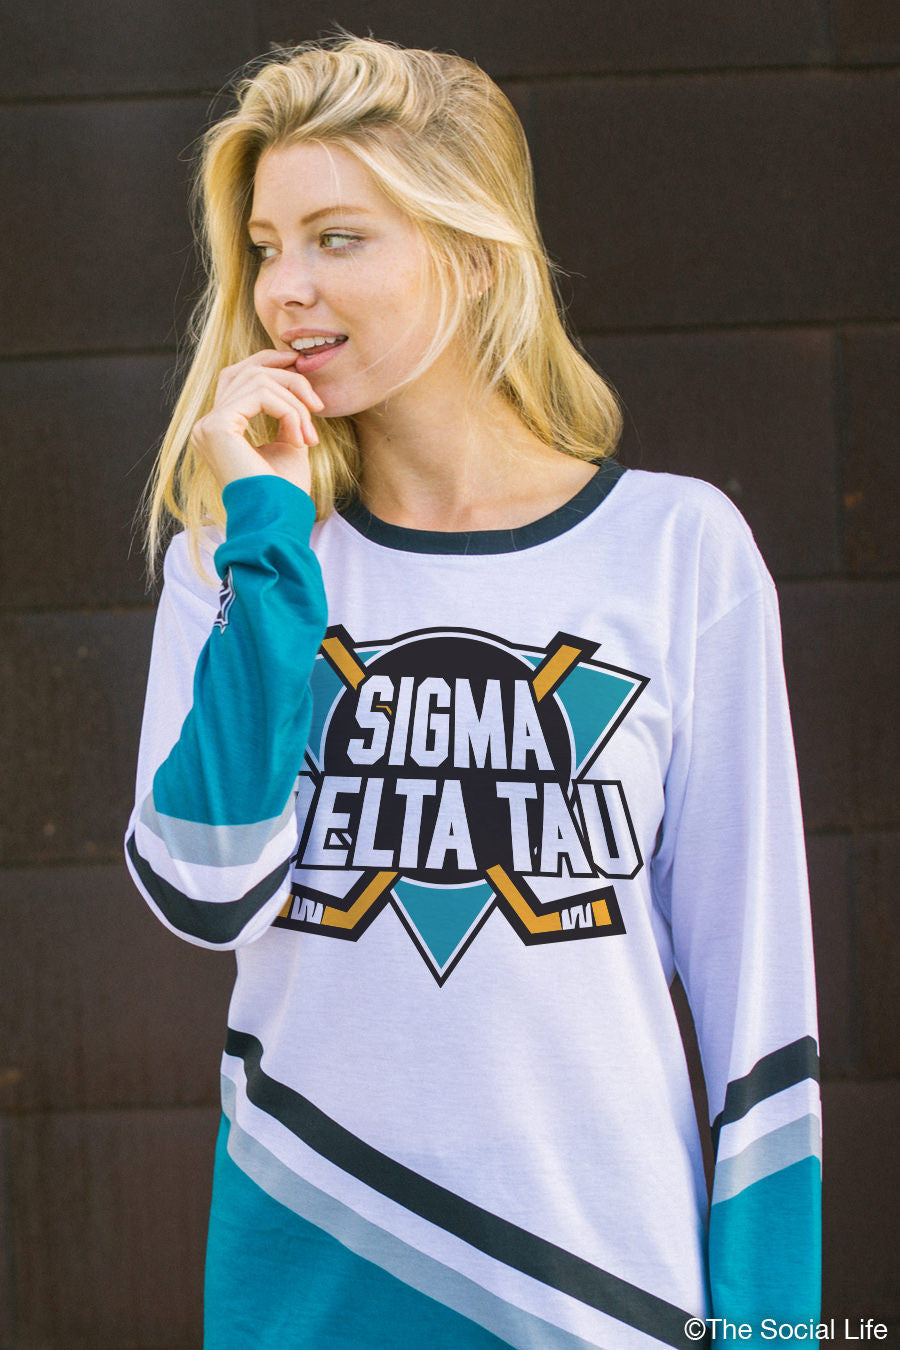 Hockey Sigma Sleeve Delta Social Long Tau – Mighty Life The